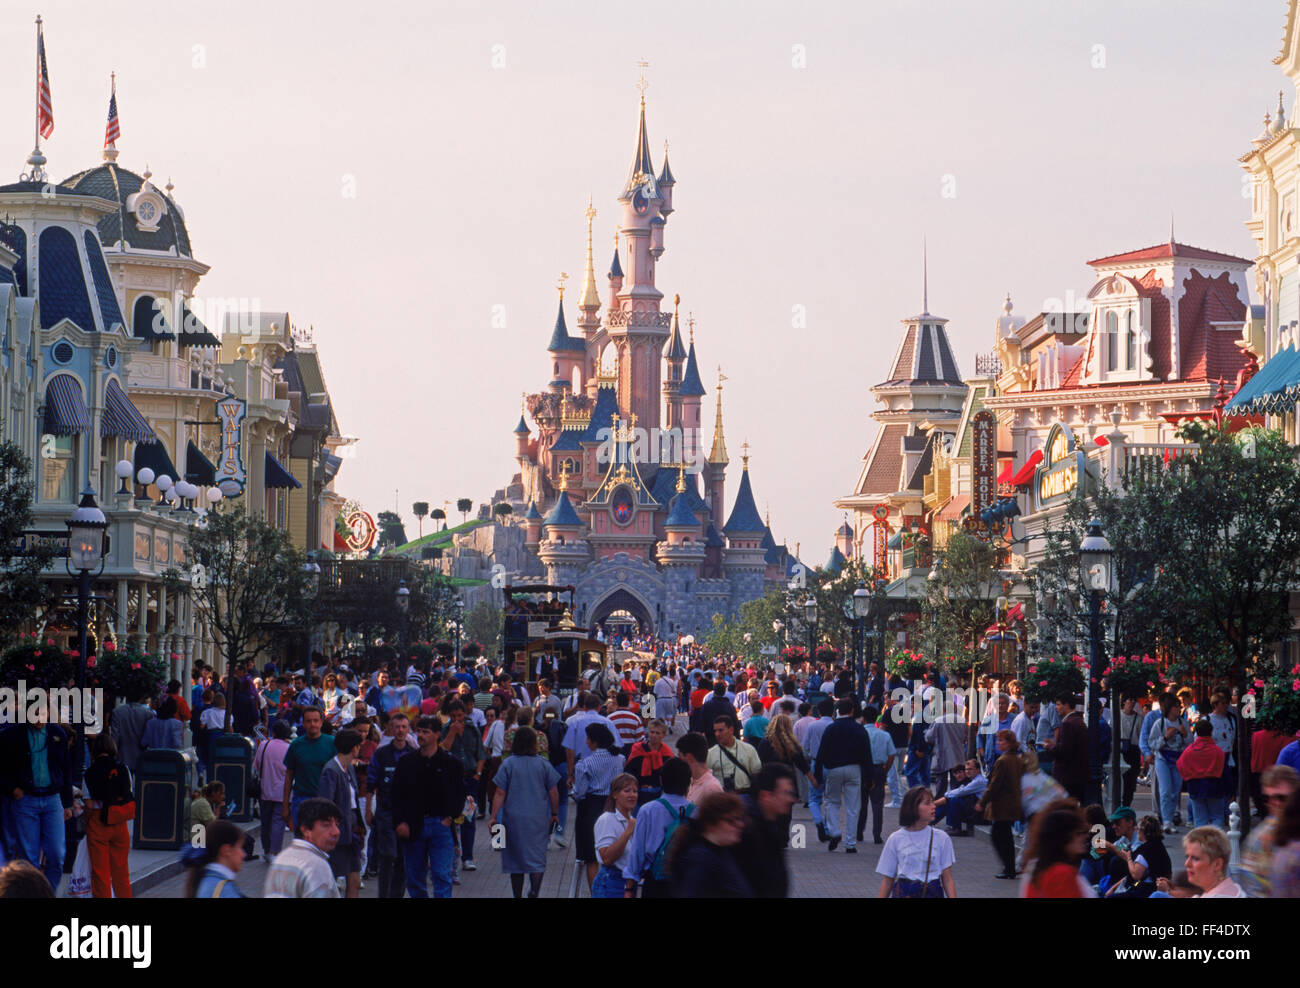 El Castillo con tiendas de la calle principal, paseos y gente durante el día en Euro Disneyland o el Euro Disney Resort fuera de París Foto de stock